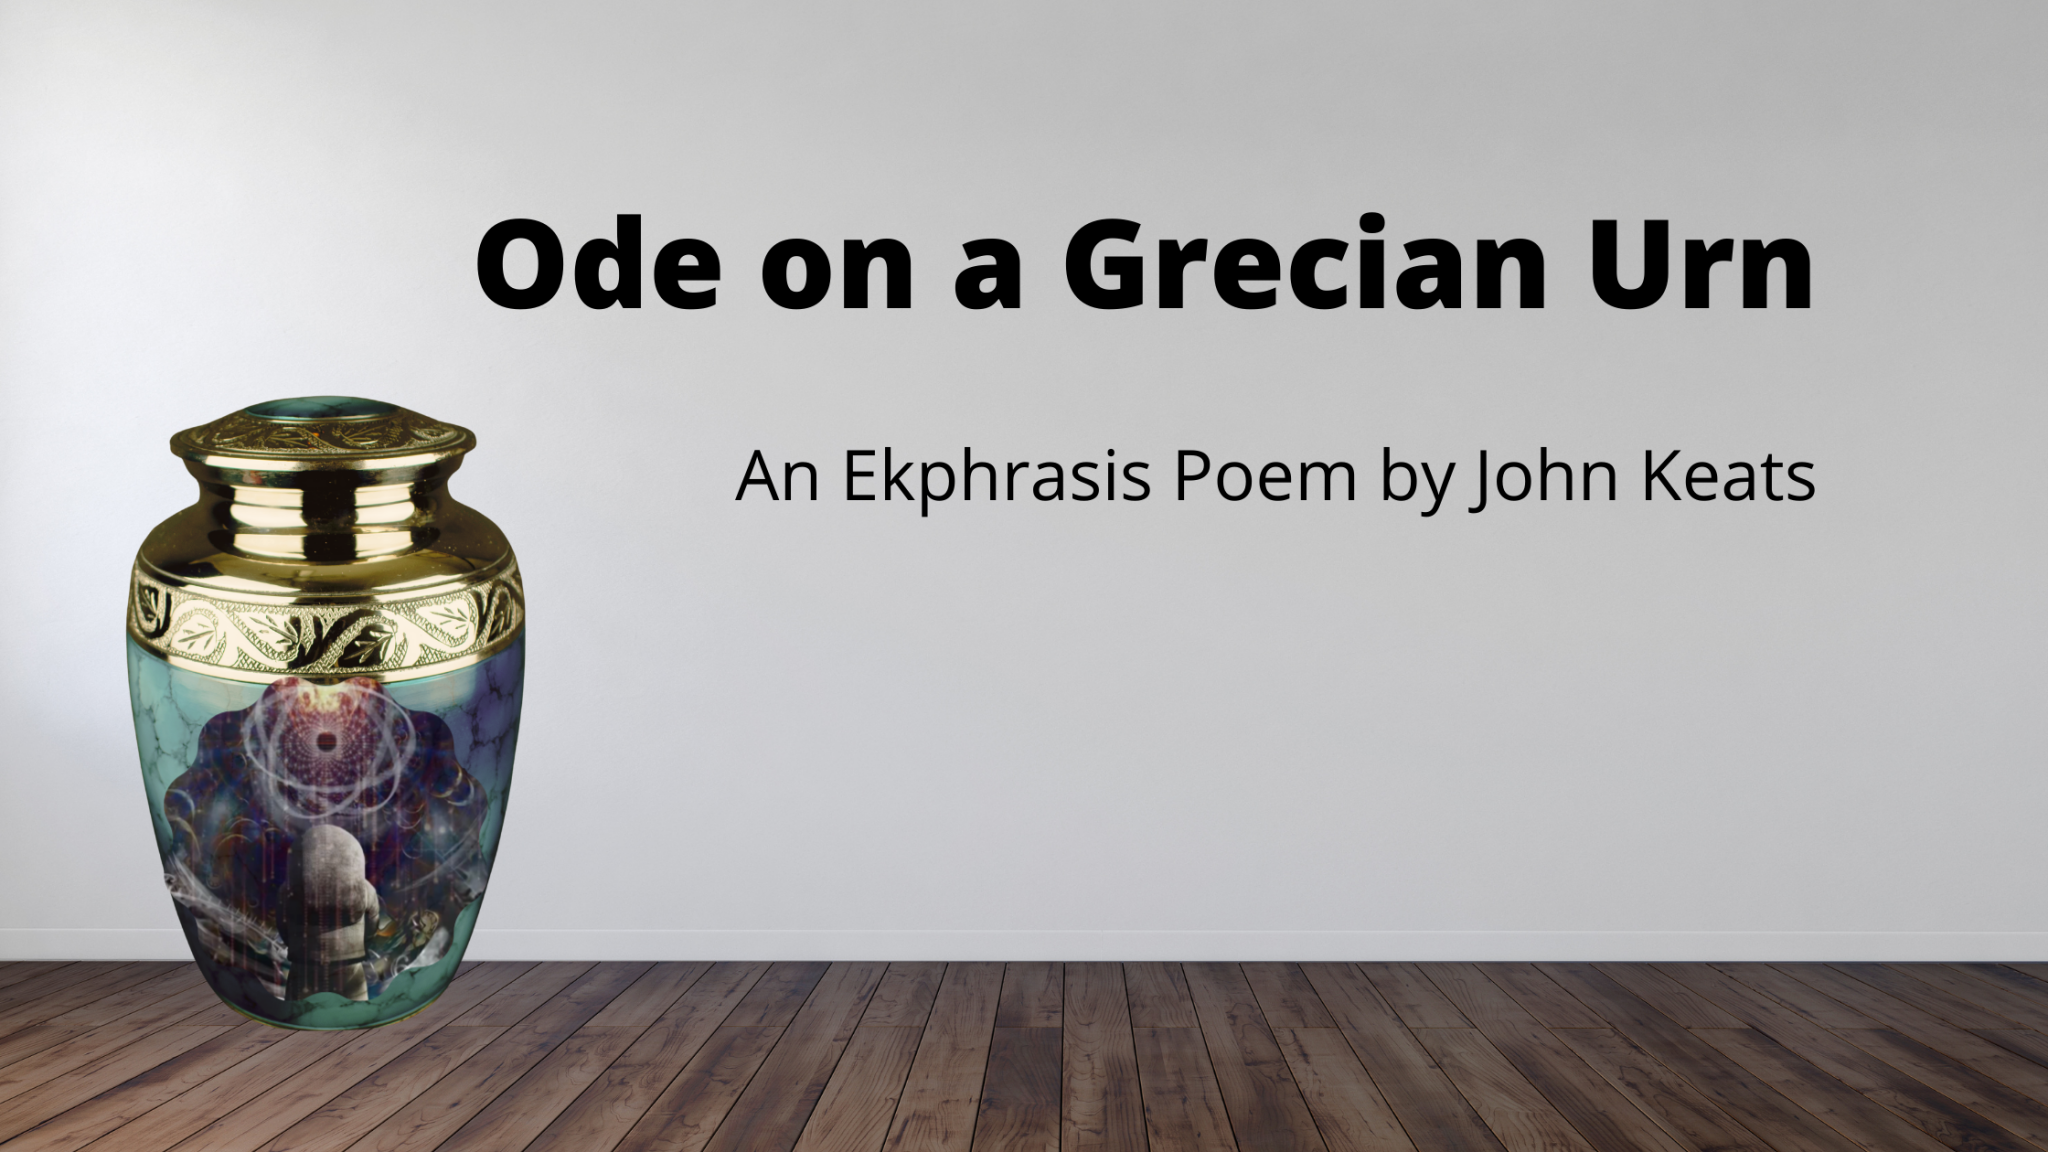 Ode on a Grecian Urn - An Ekphrasis poem by John Keats